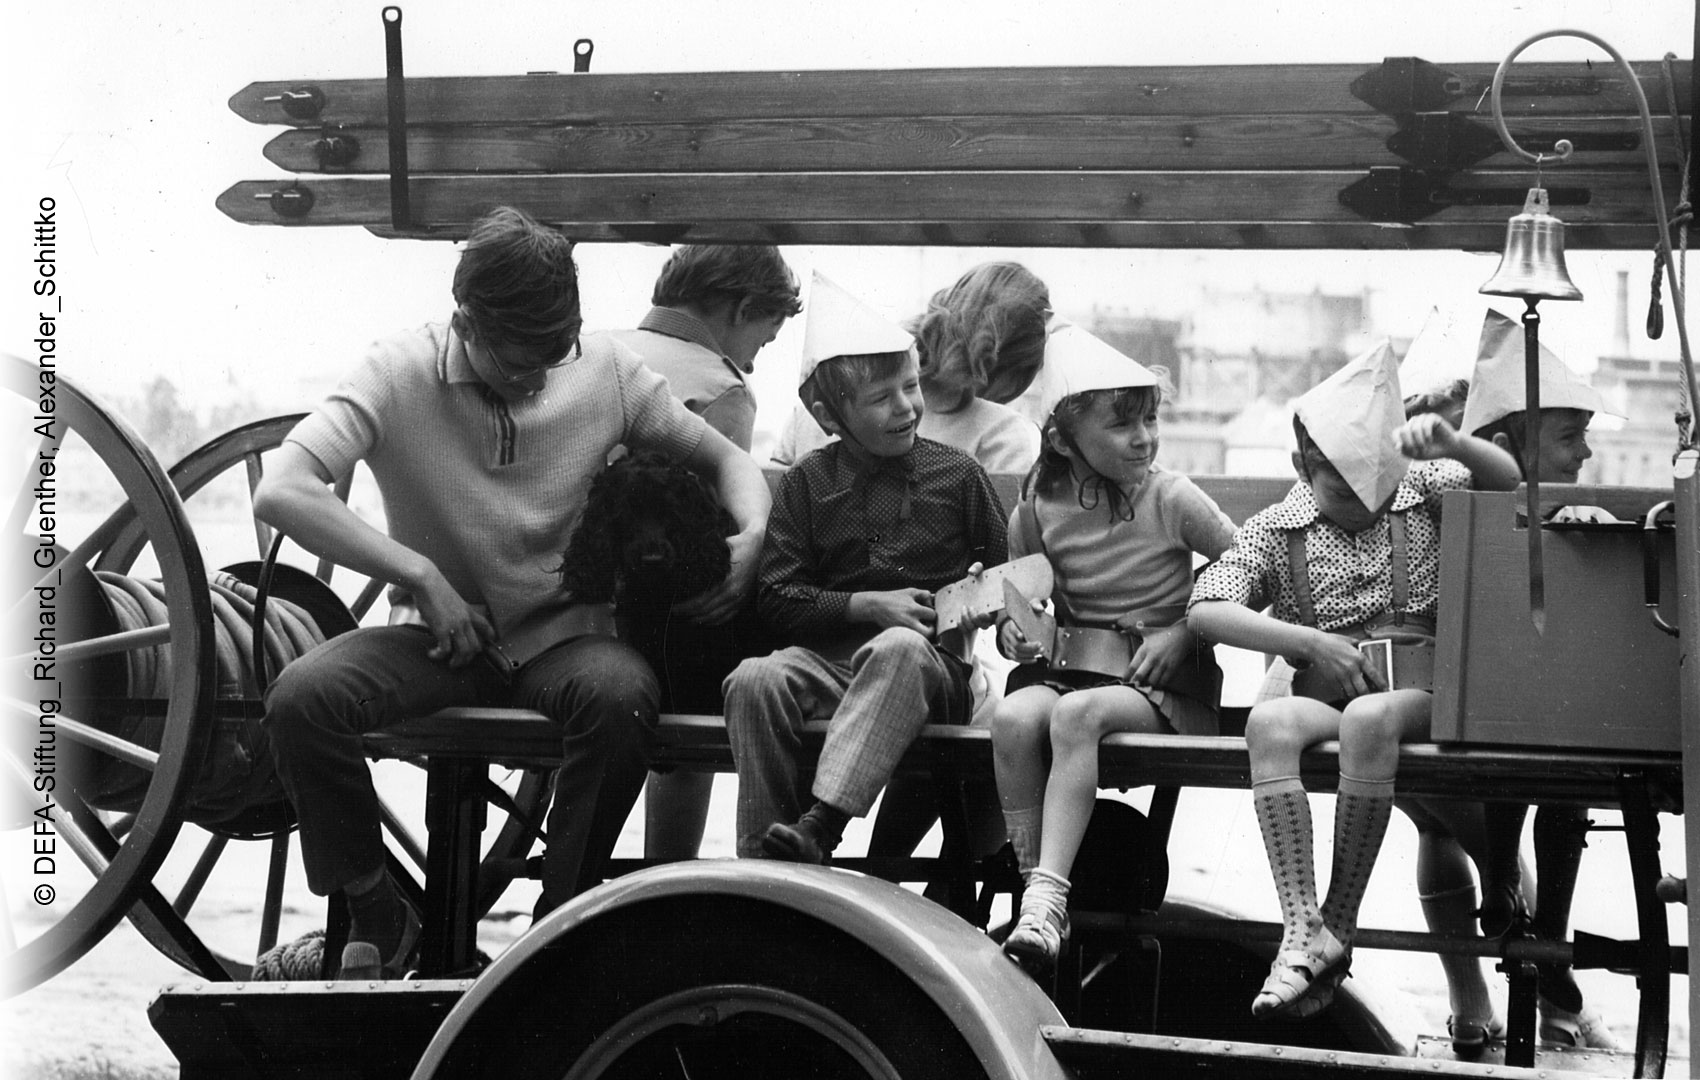 Kinder und Jugendliche sitzen gemeinsam auf einem alten Feuerwehrauto.